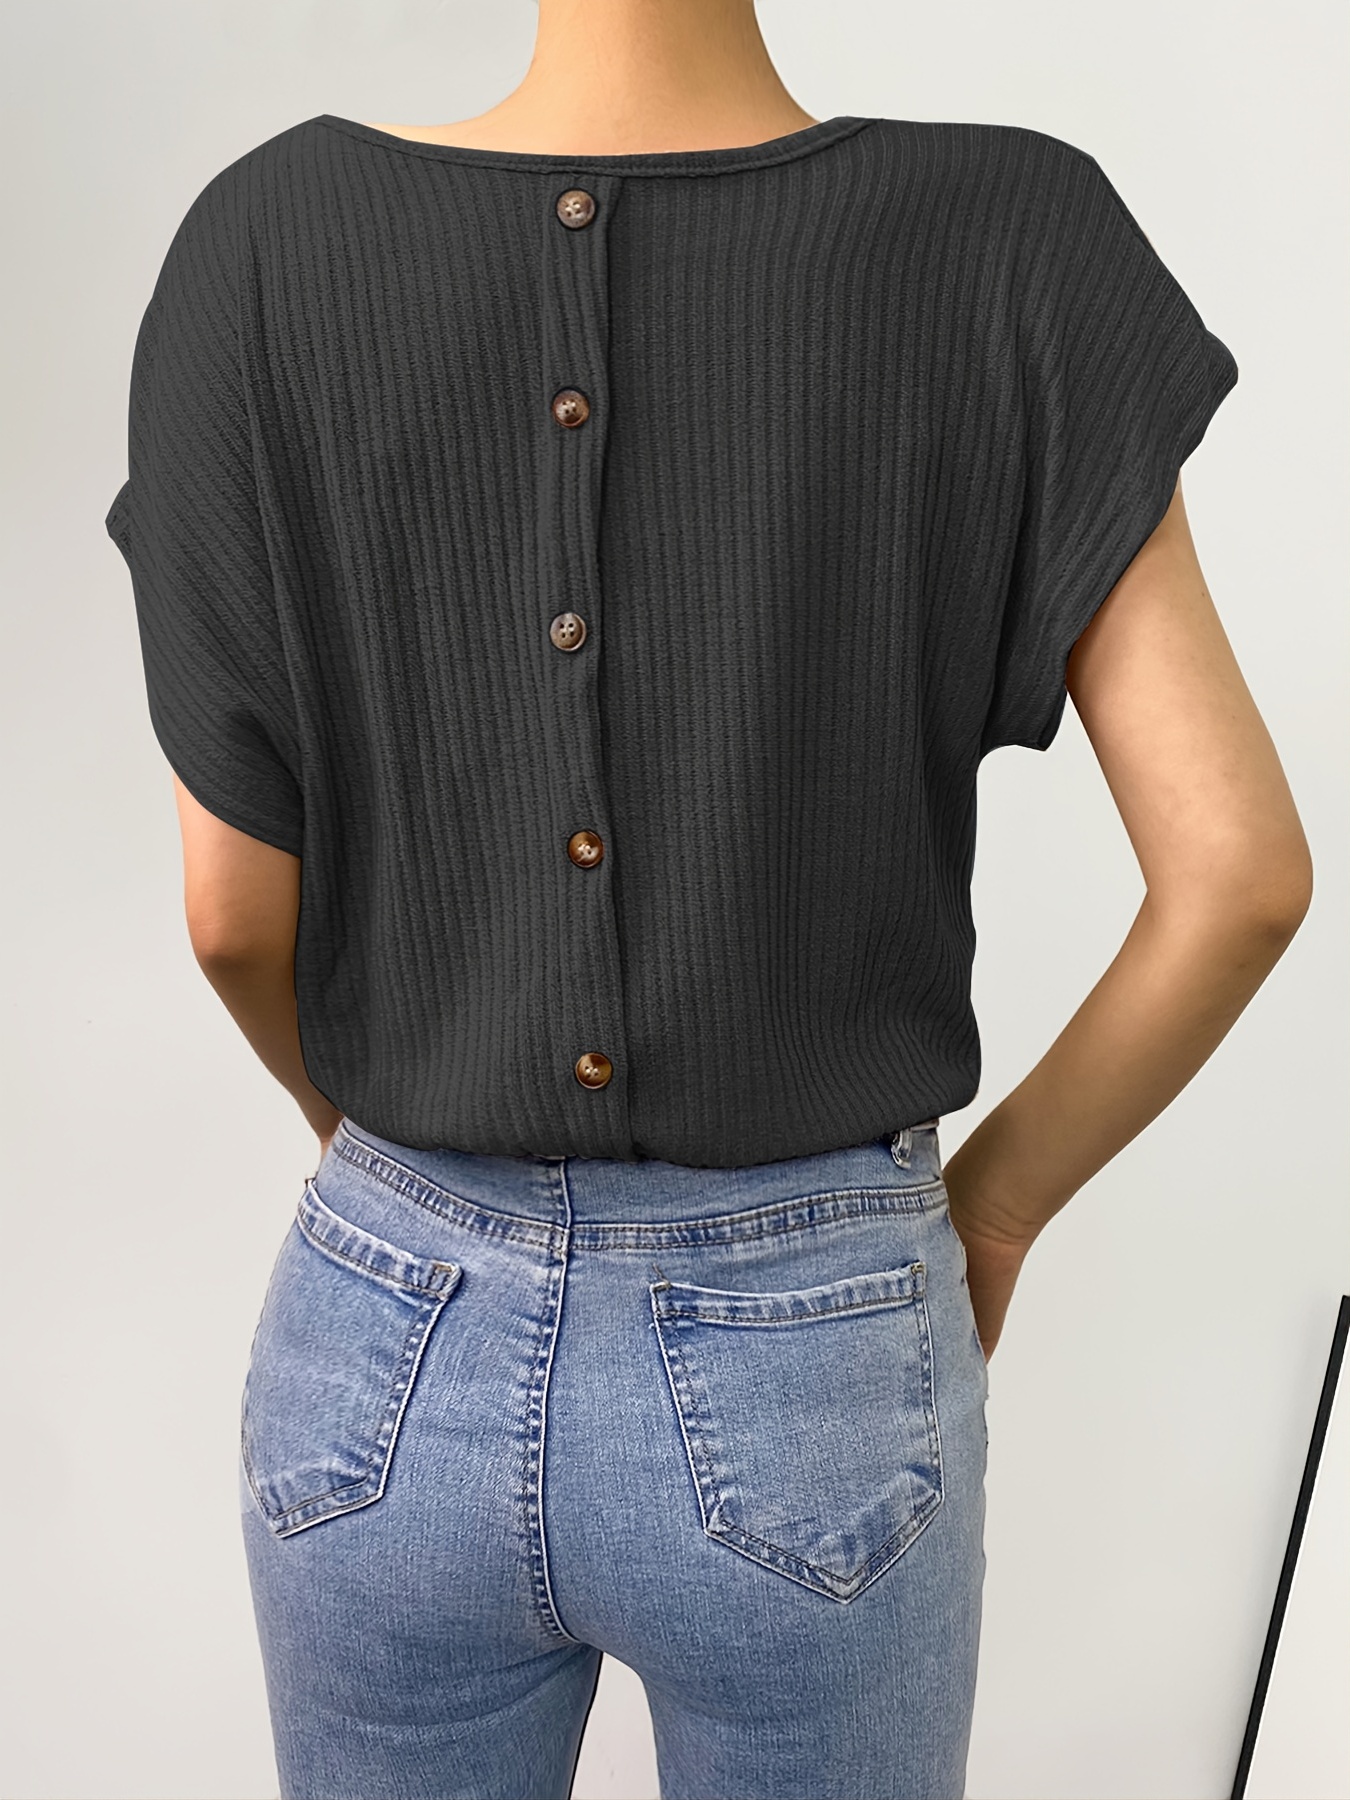 Blusas de puntos camisetas con botones para mujer Mujer Verano